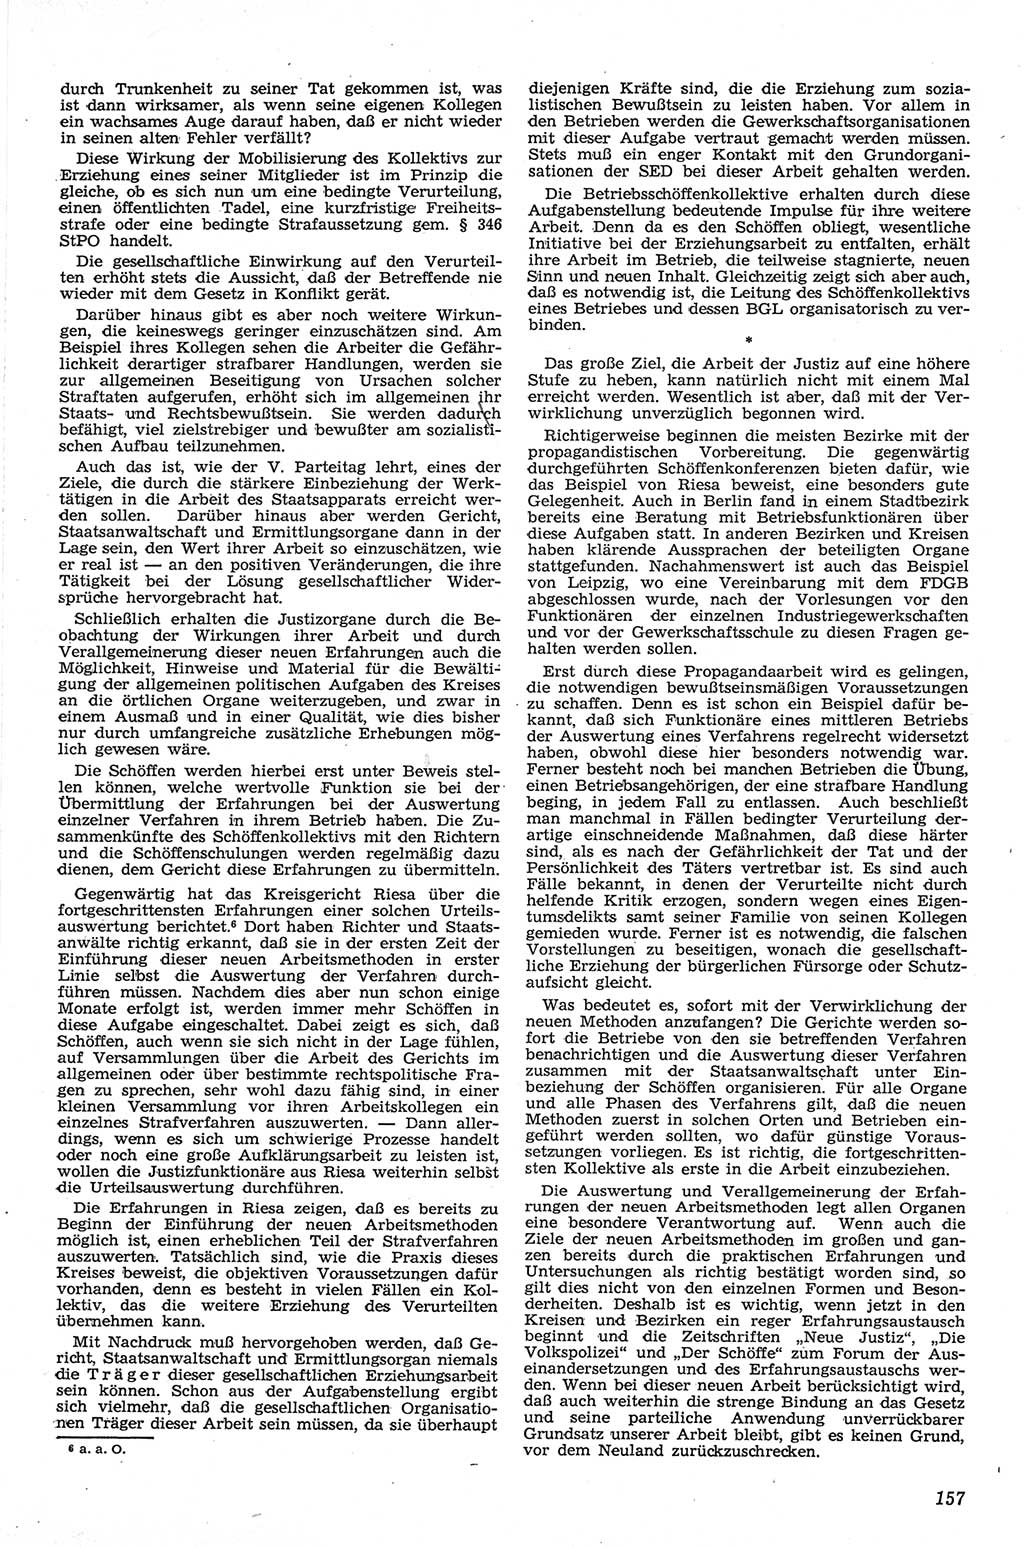 Neue Justiz (NJ), Zeitschrift für Recht und Rechtswissenschaft [Deutsche Demokratische Republik (DDR)], 13. Jahrgang 1959, Seite 157 (NJ DDR 1959, S. 157)